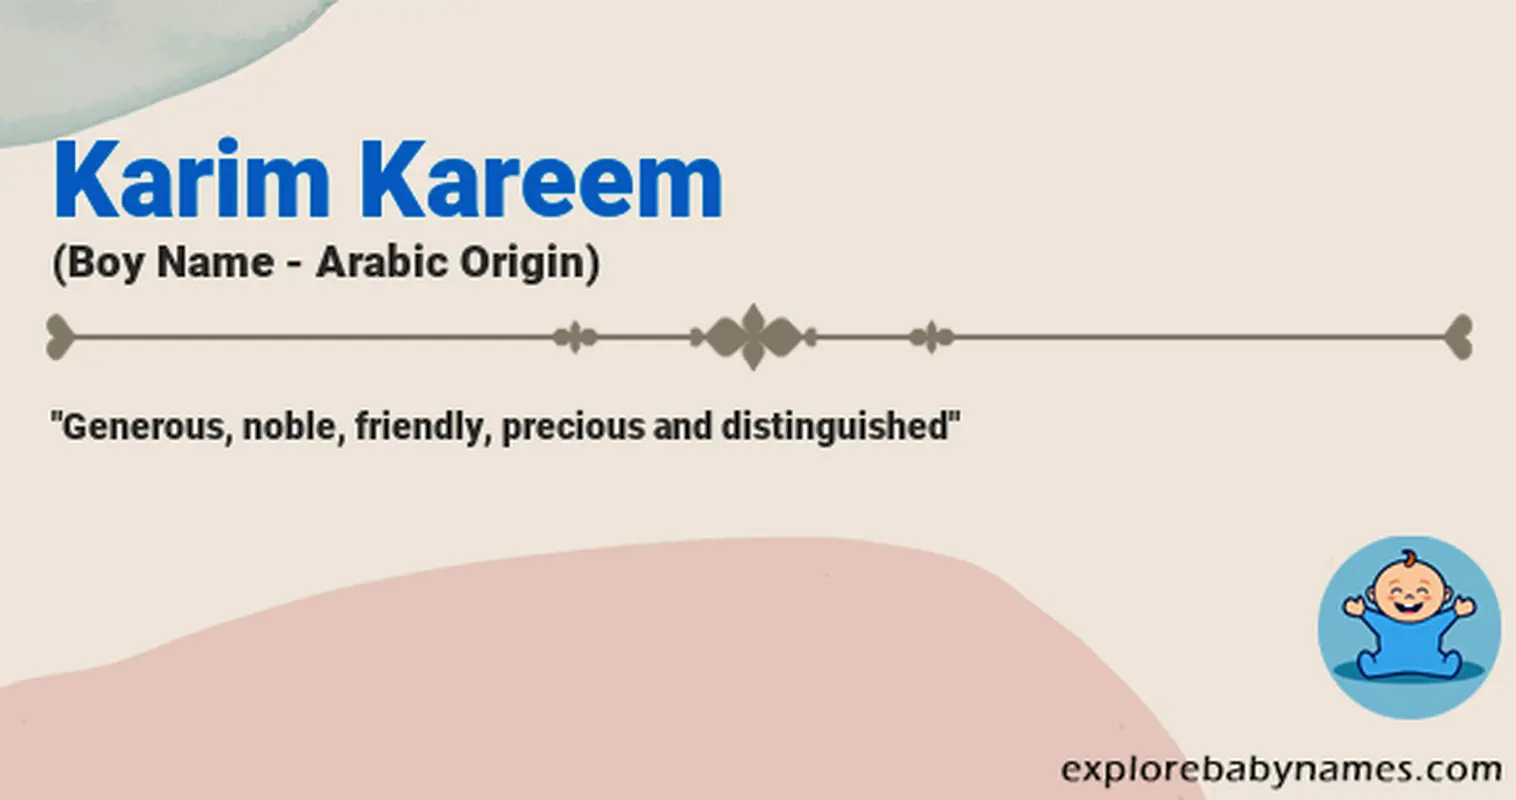 Meaning of Karim Kareem